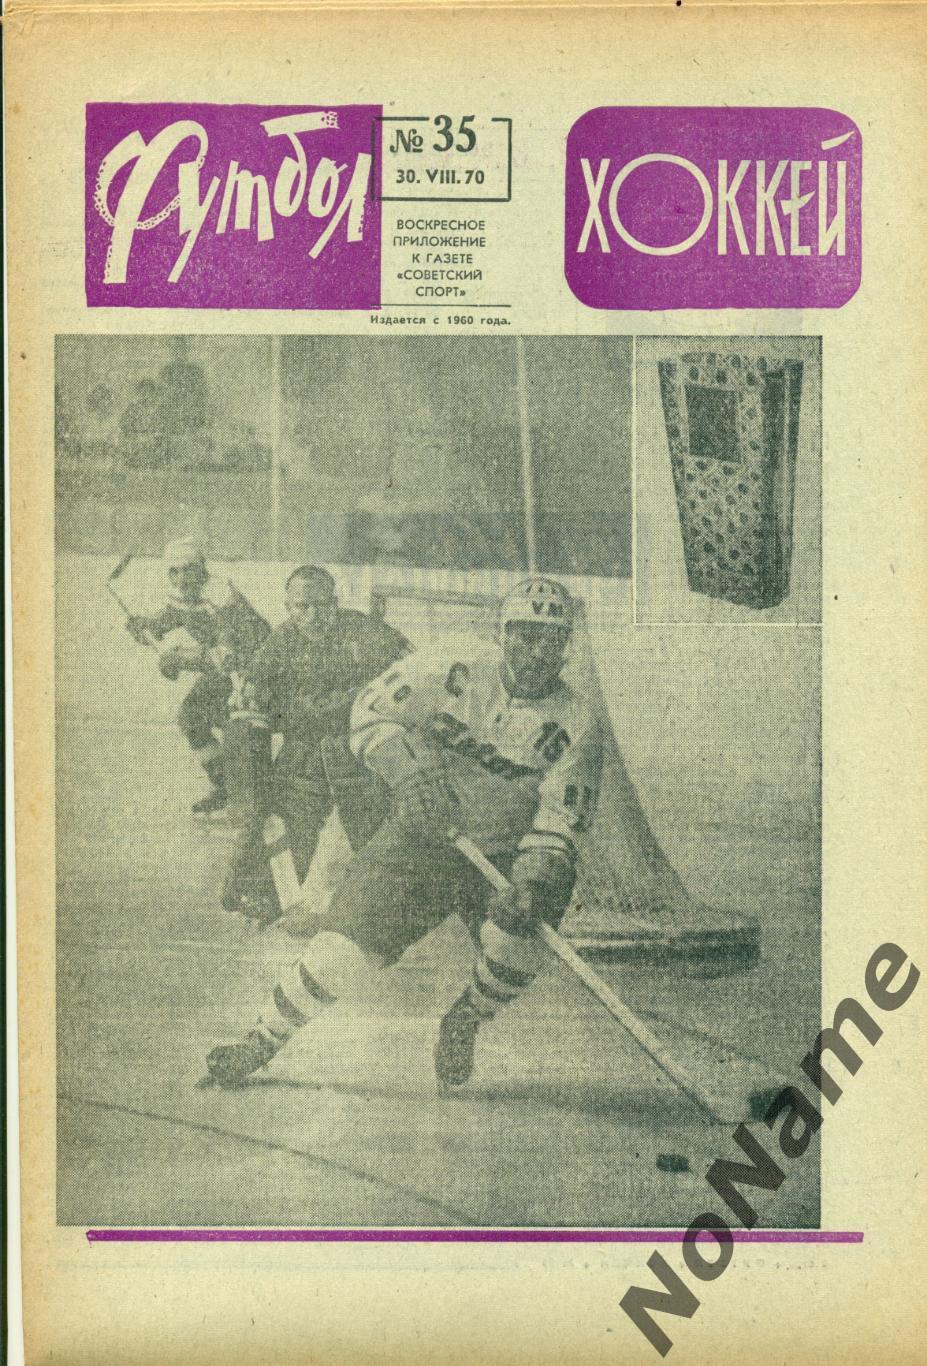 футбол-хоккей № 35, 1970 г.